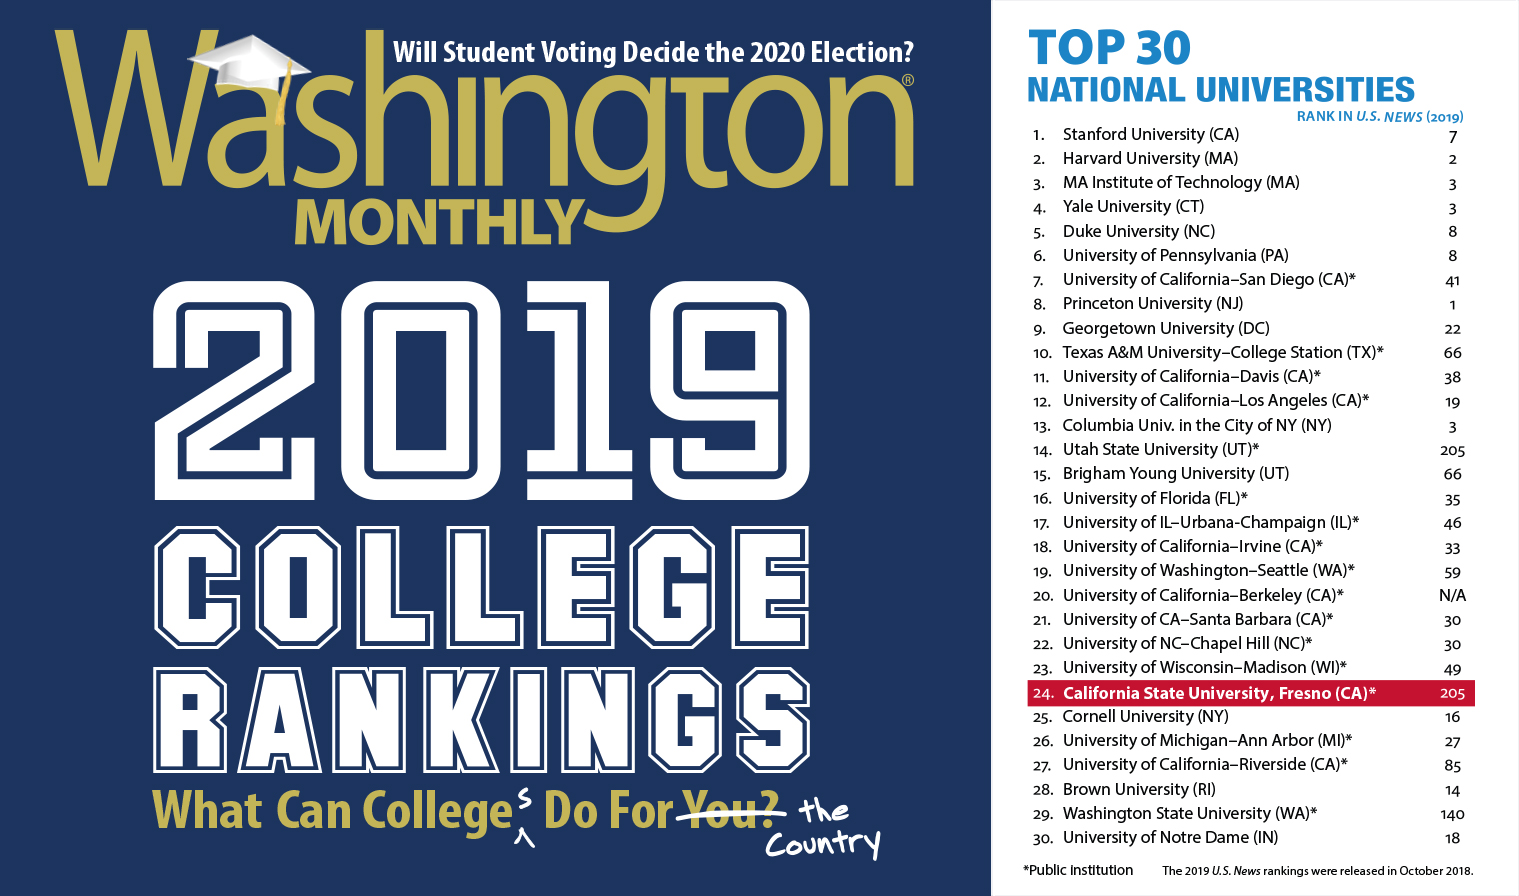 Washington Monthly rankings